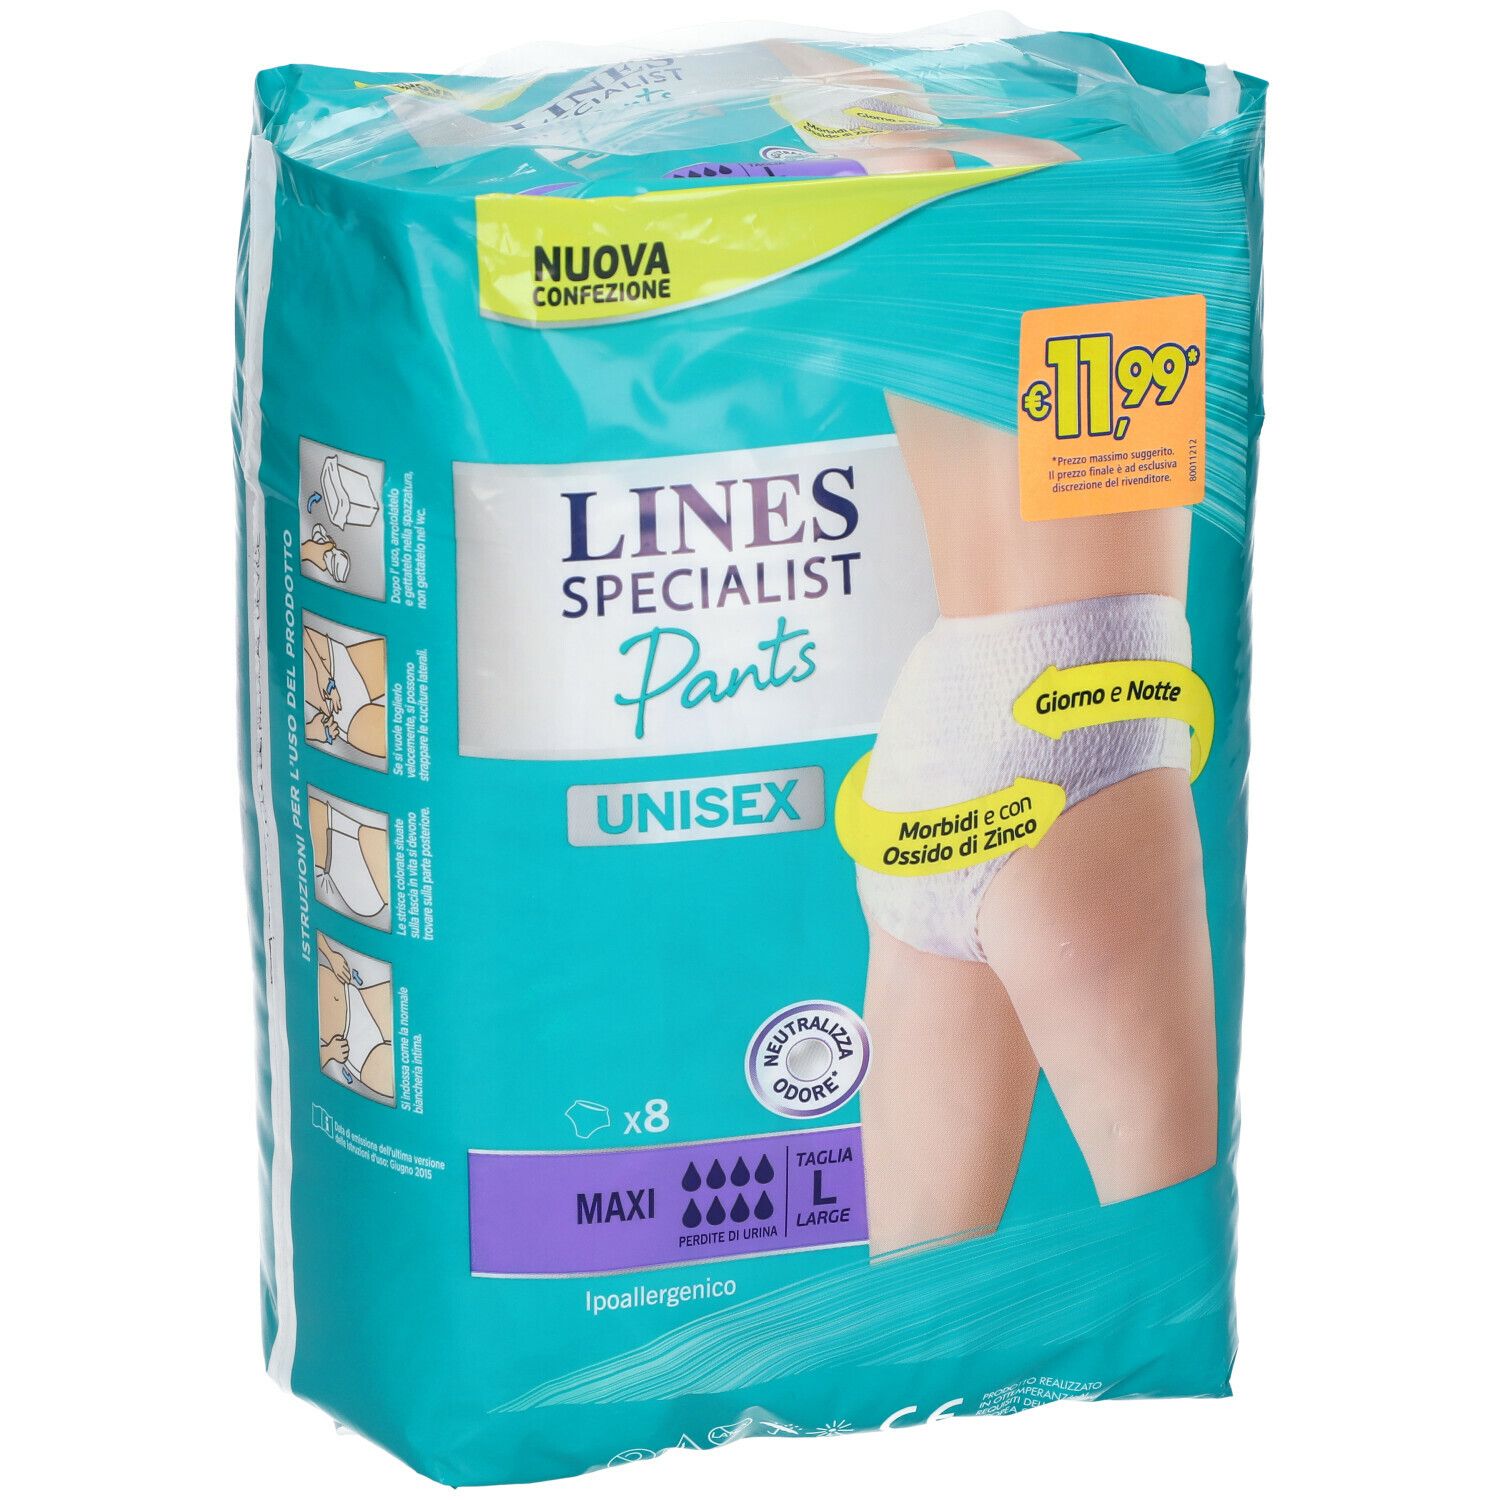 Lines Specialist Pants Unisex Maxi L